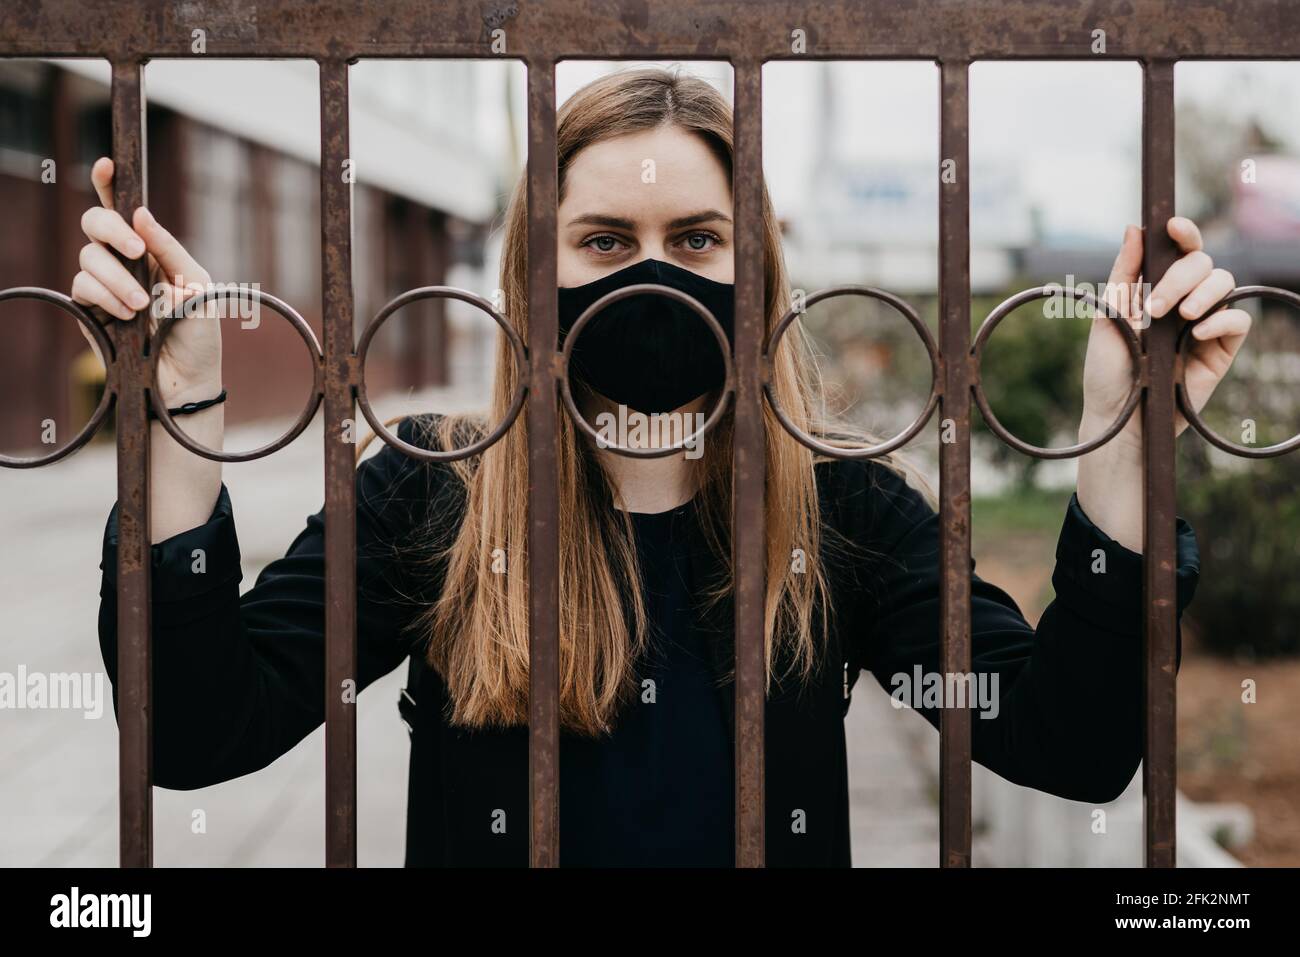 femme avec masque de visage derrière les barres à l'extérieur, concept lockdown covid 19 Banque D'Images